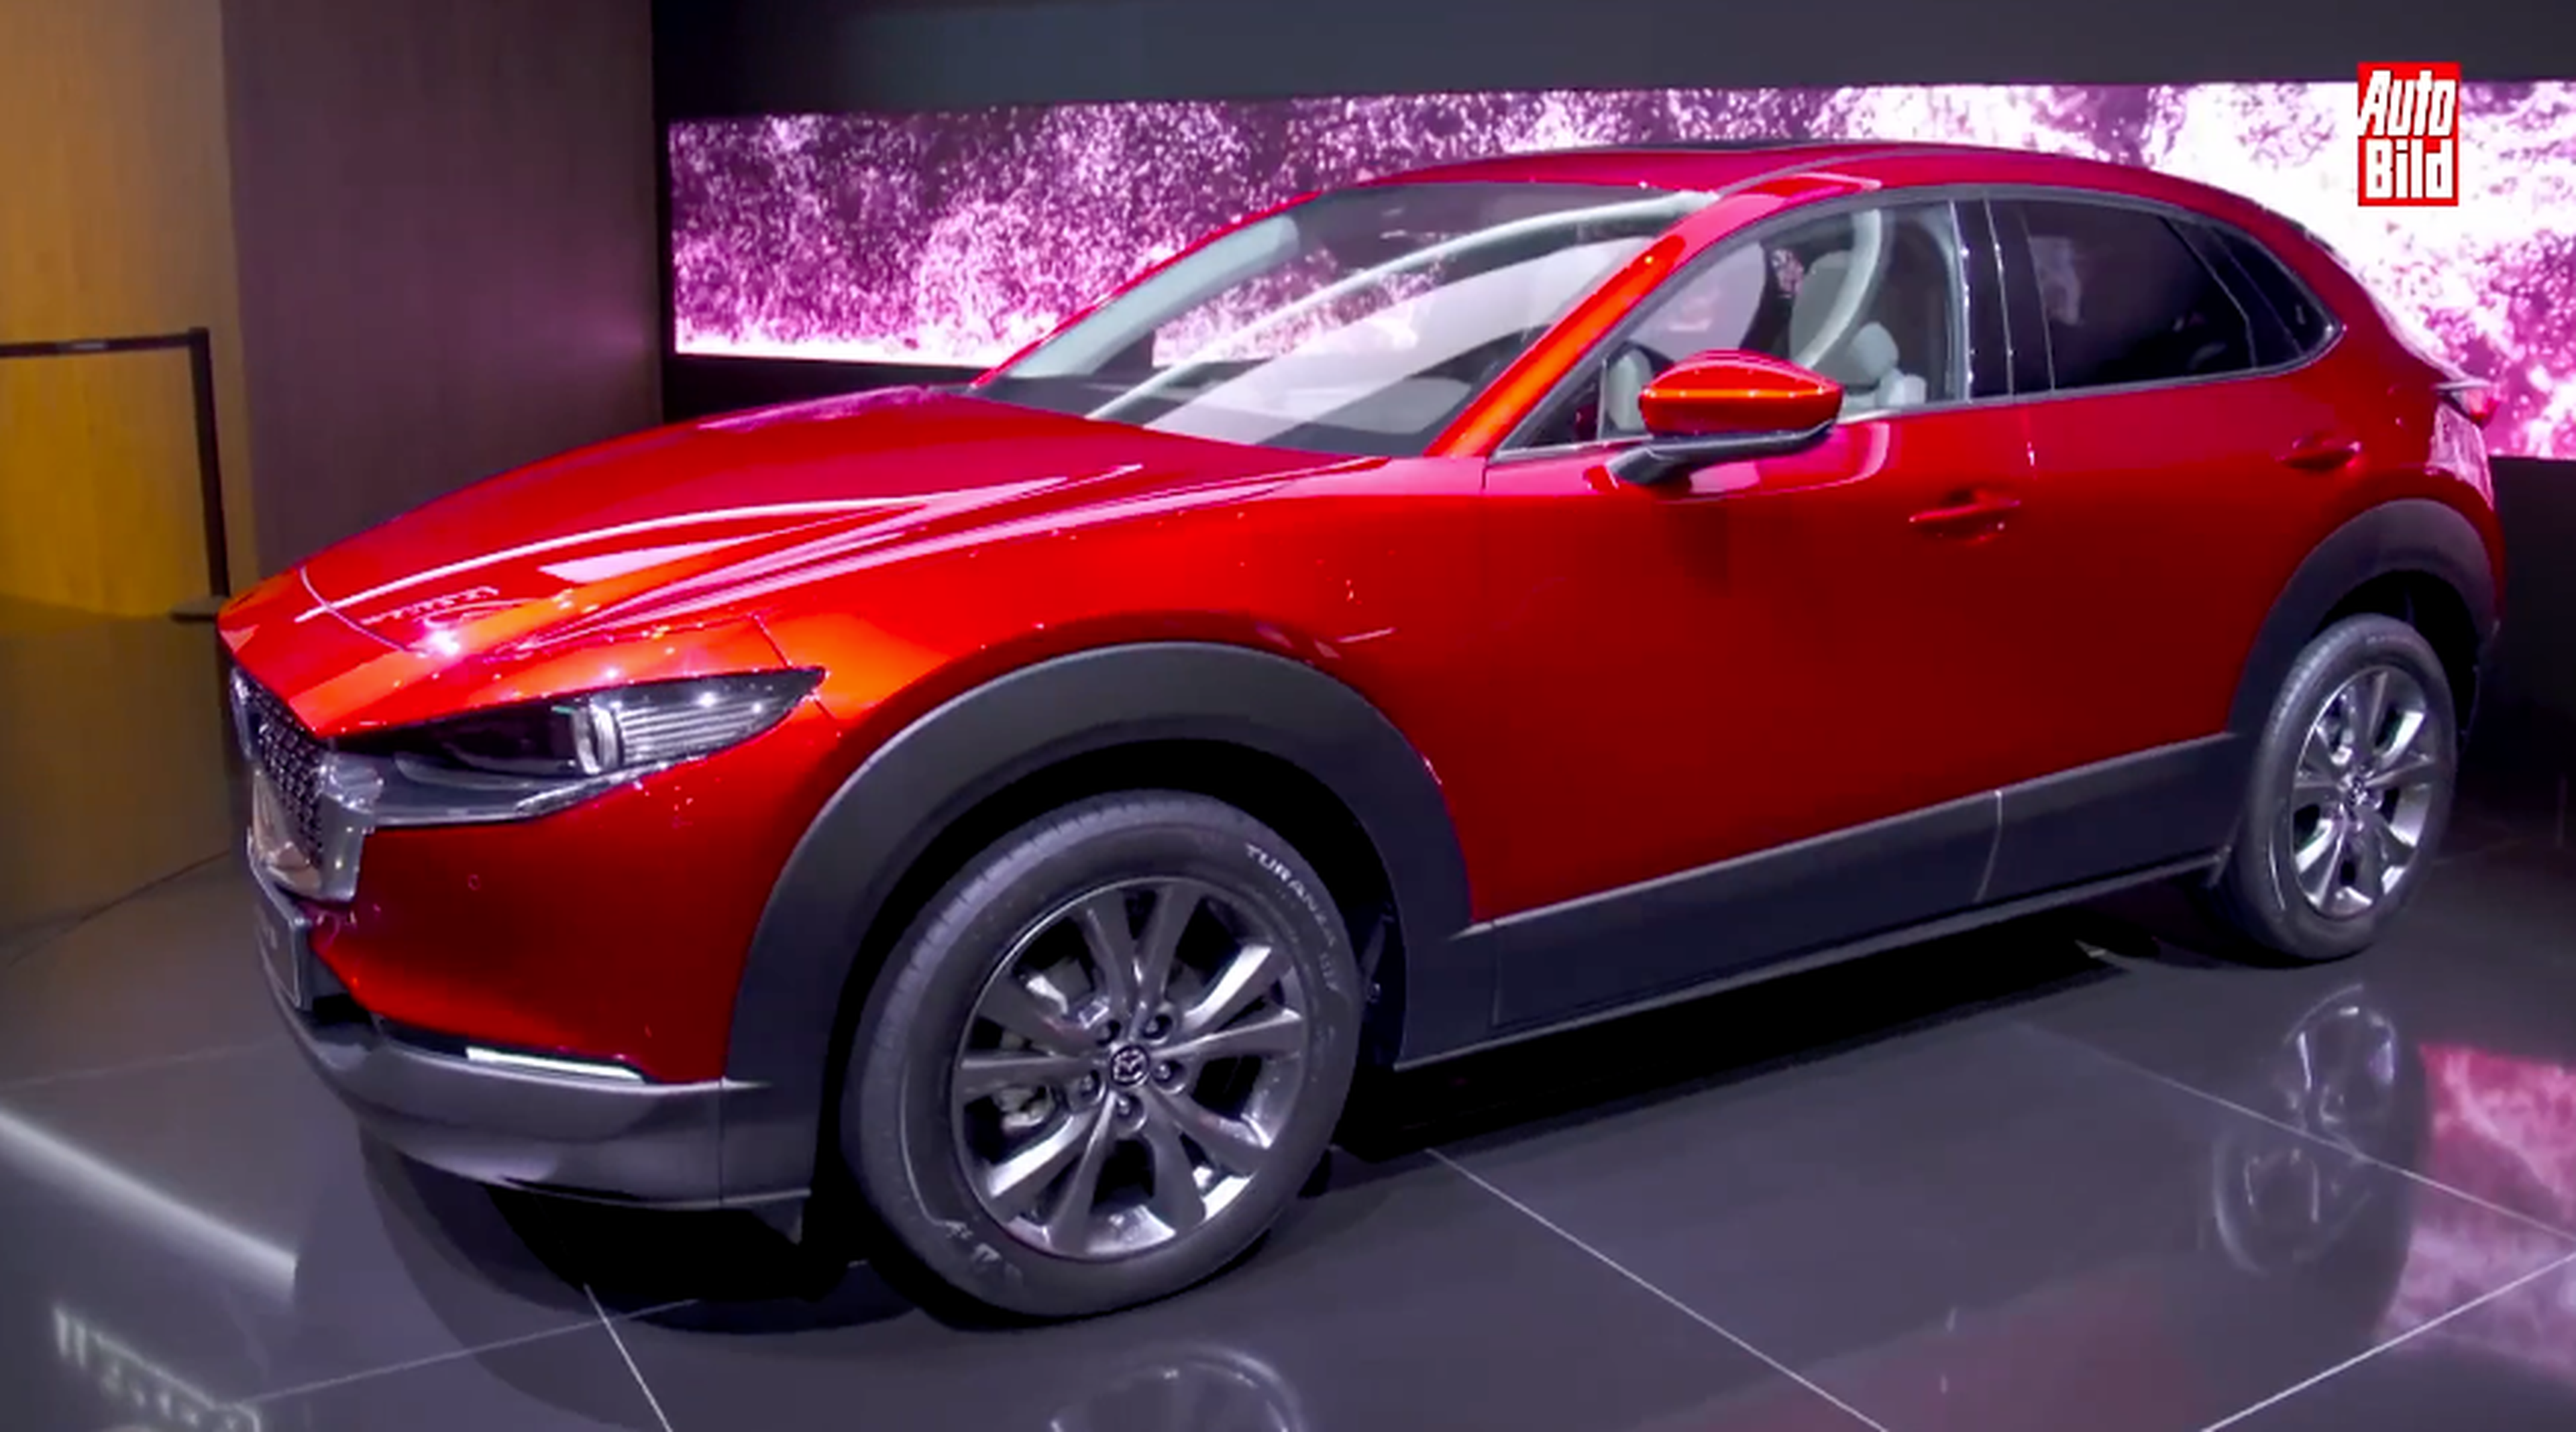 VÍDEO: Debut oficial del Mazda CX-30 2019, te contamos todos los detalles